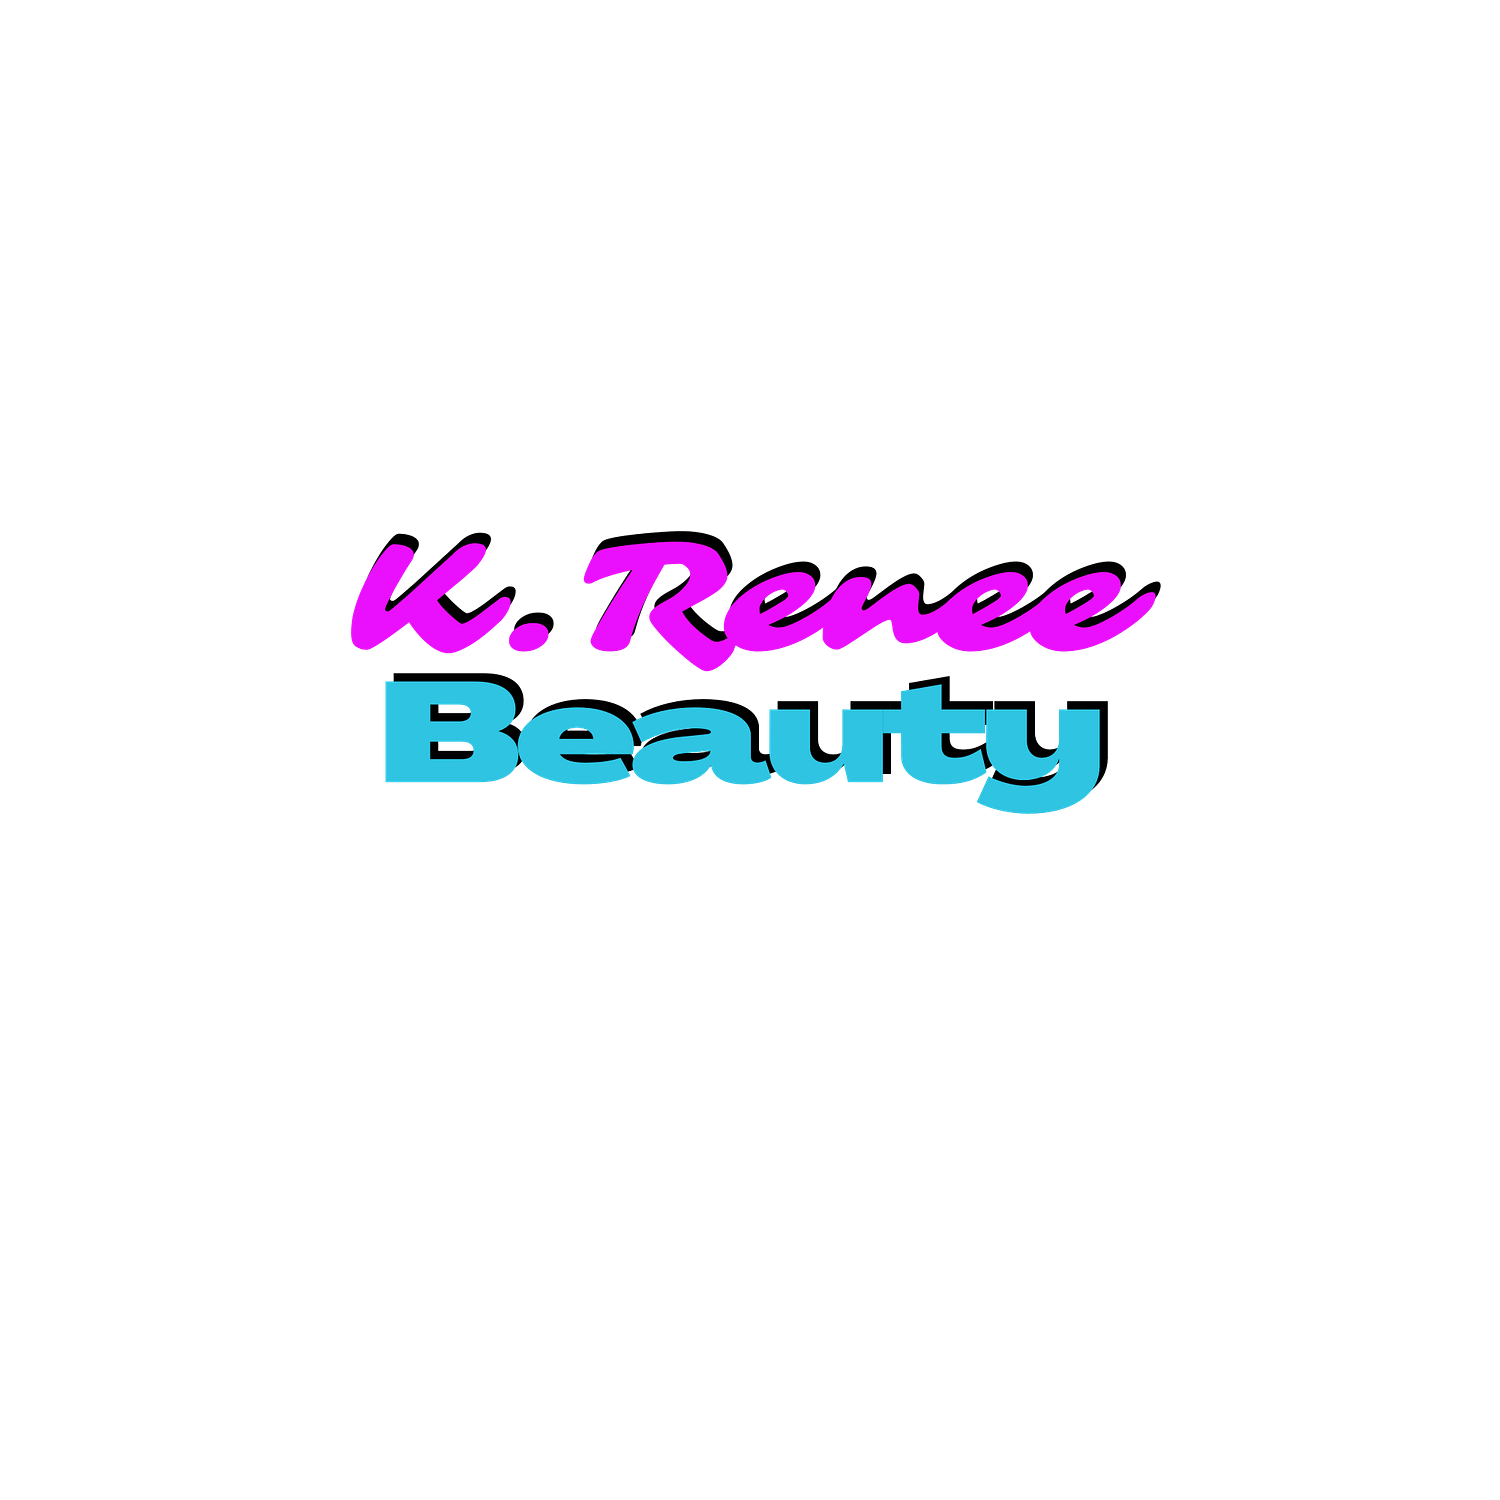 K. Renee Beauty